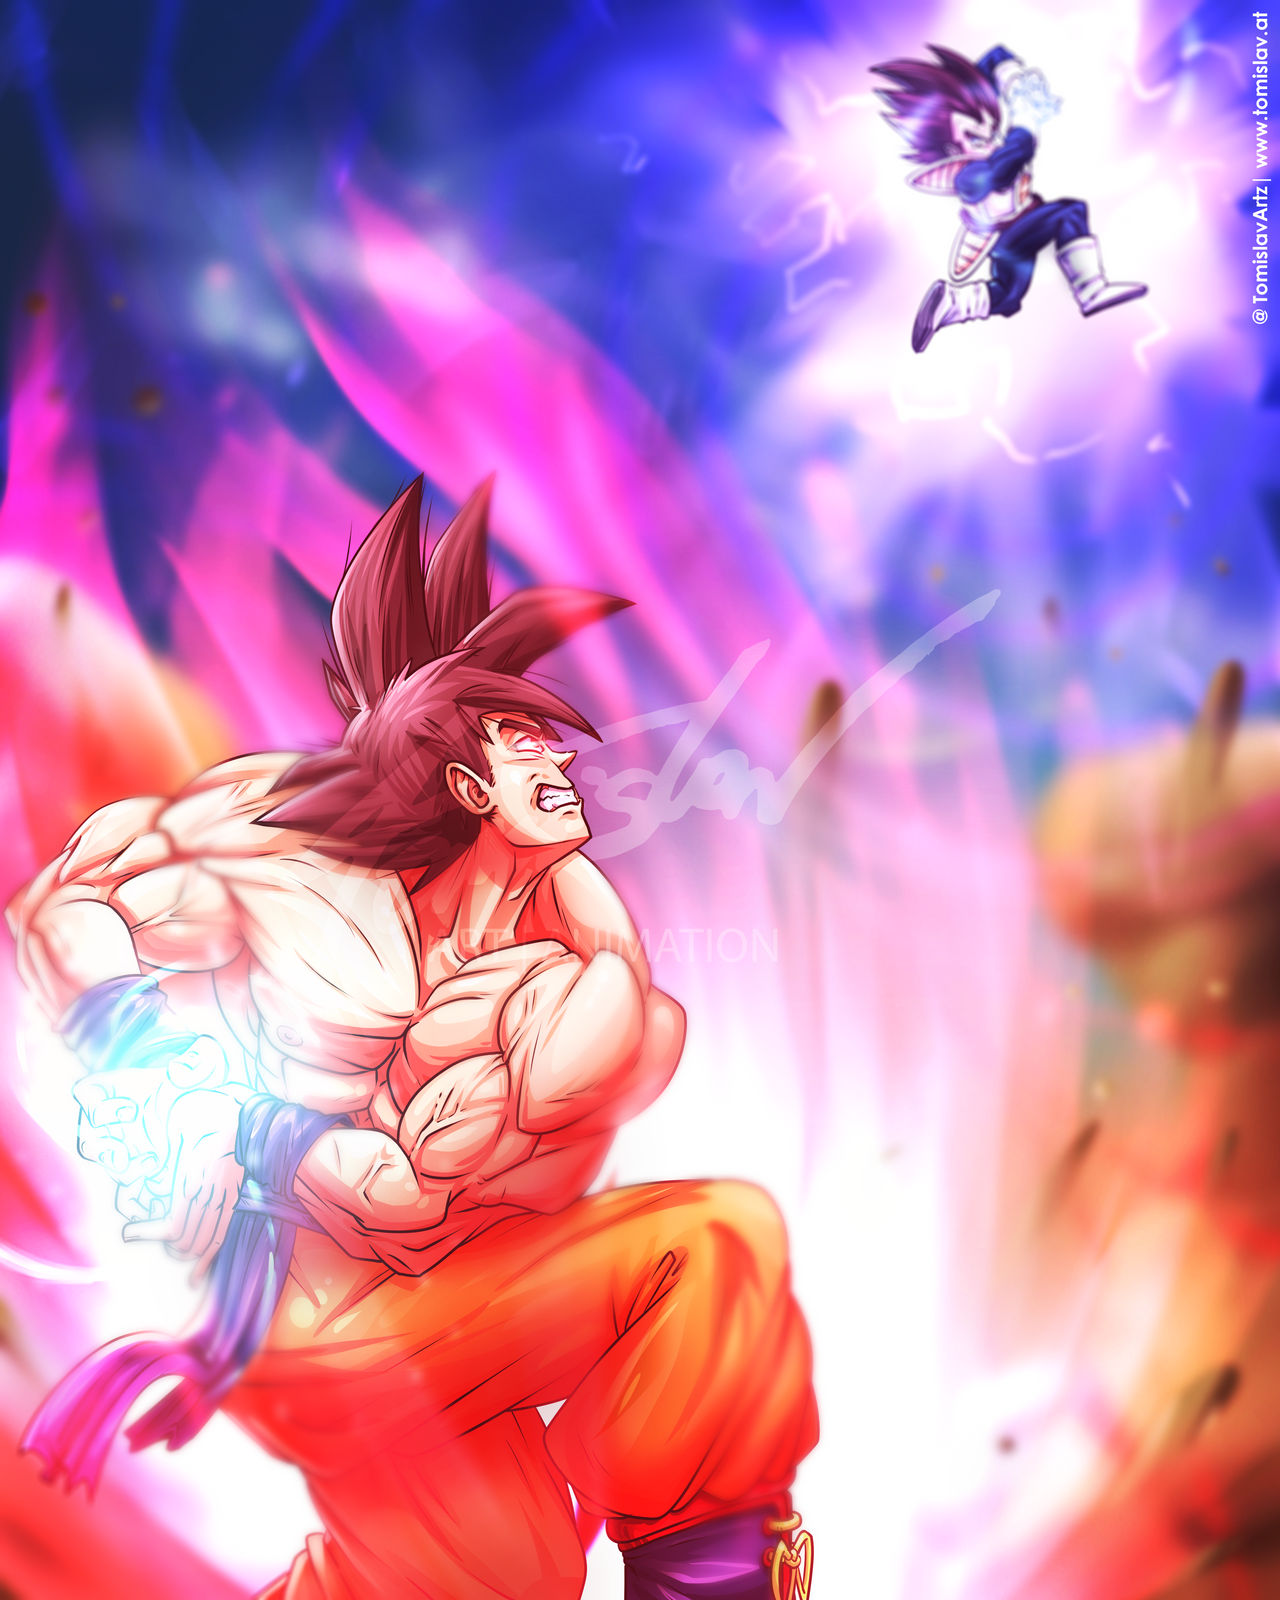 Son Goku vs Vegeta Dragon Ball Z Fan Art by TomislavArtz ...